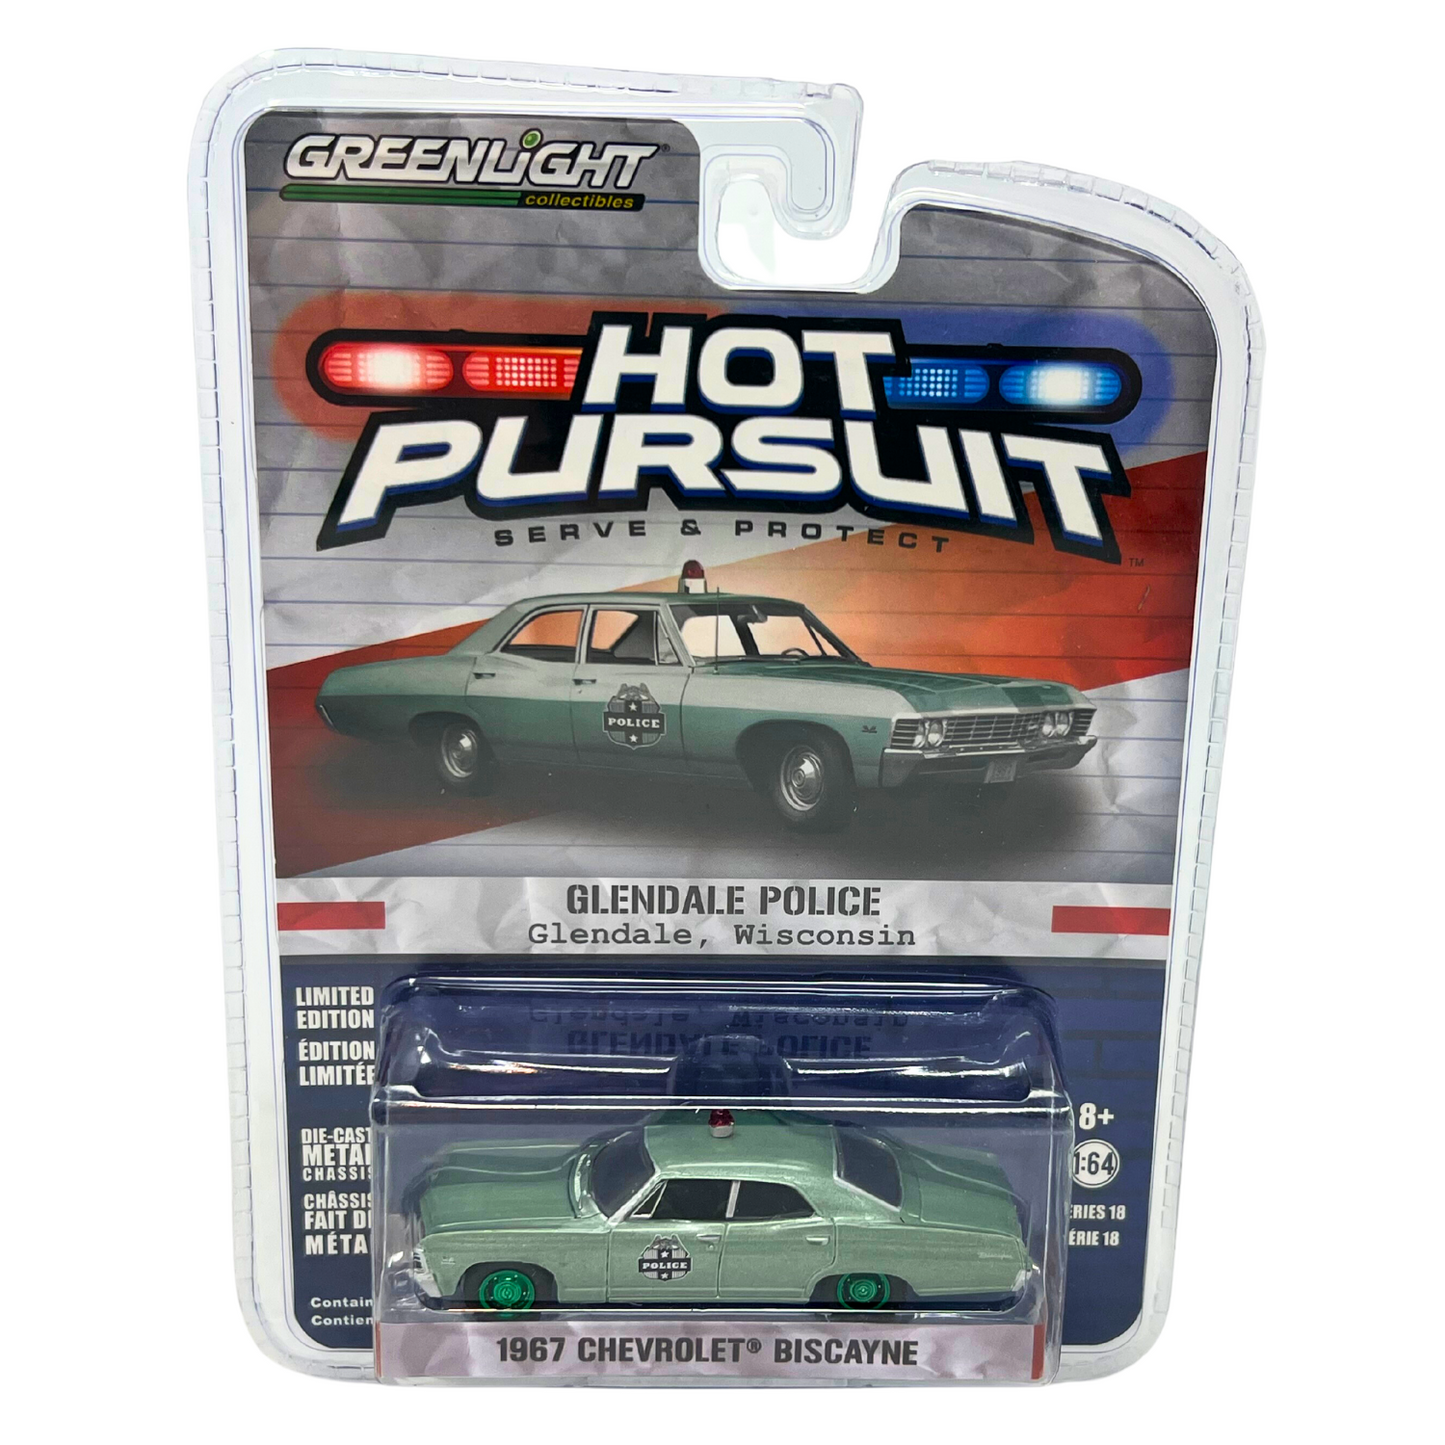 Greenlight Hot Pursuit 1967 Chevrolet Biscayne Green Machine Police 1:64 Diecast